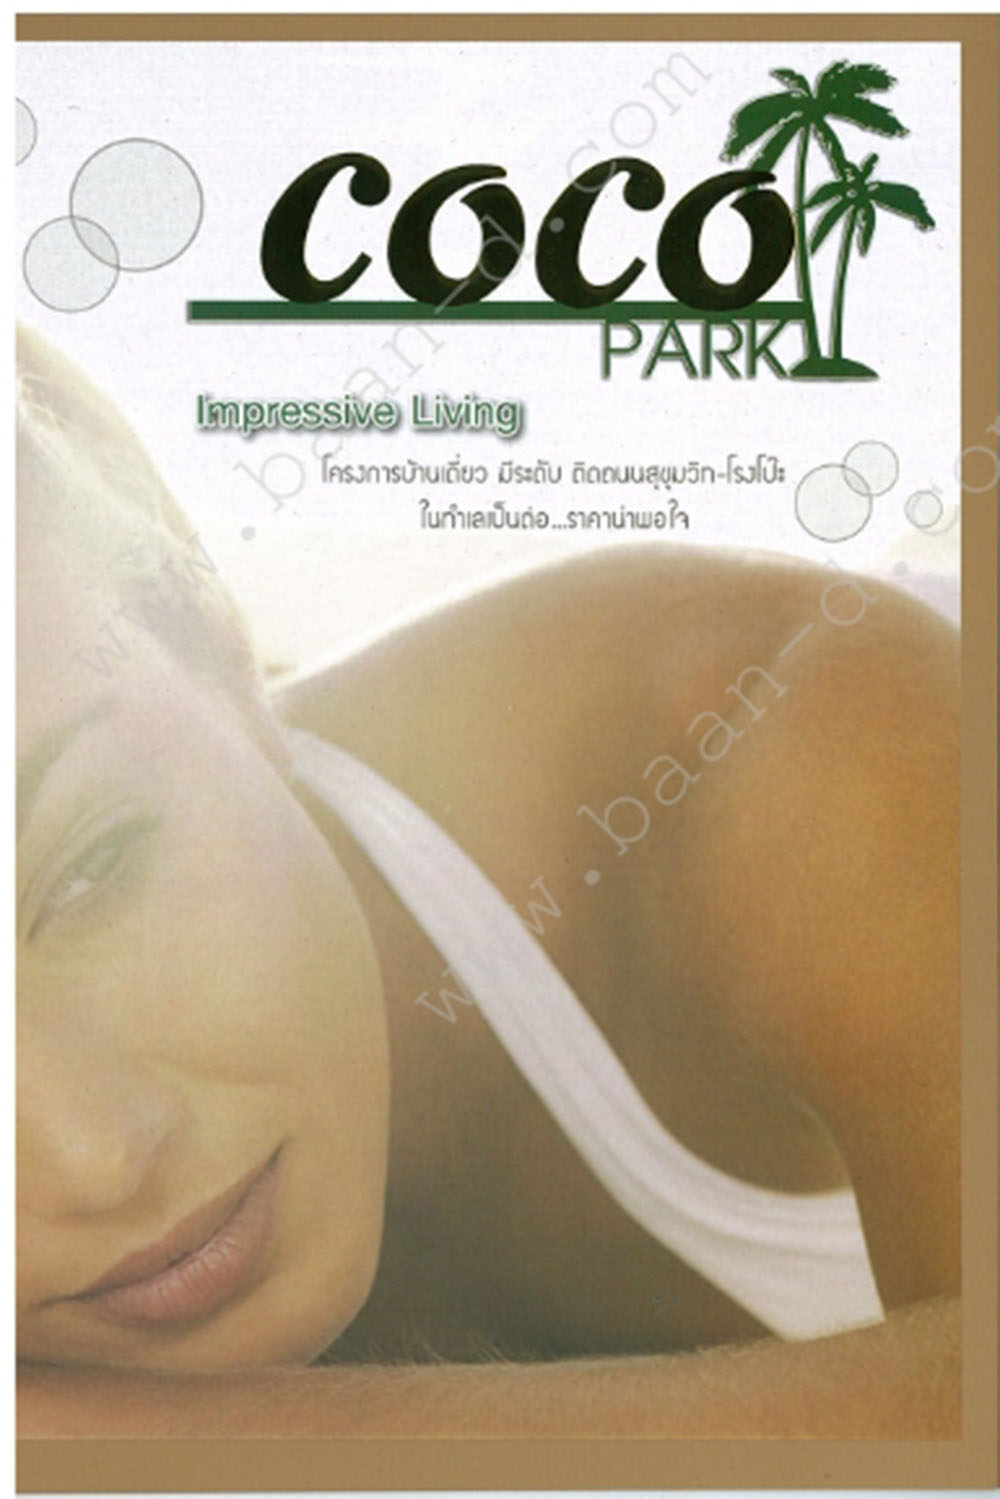 COCO Park_1